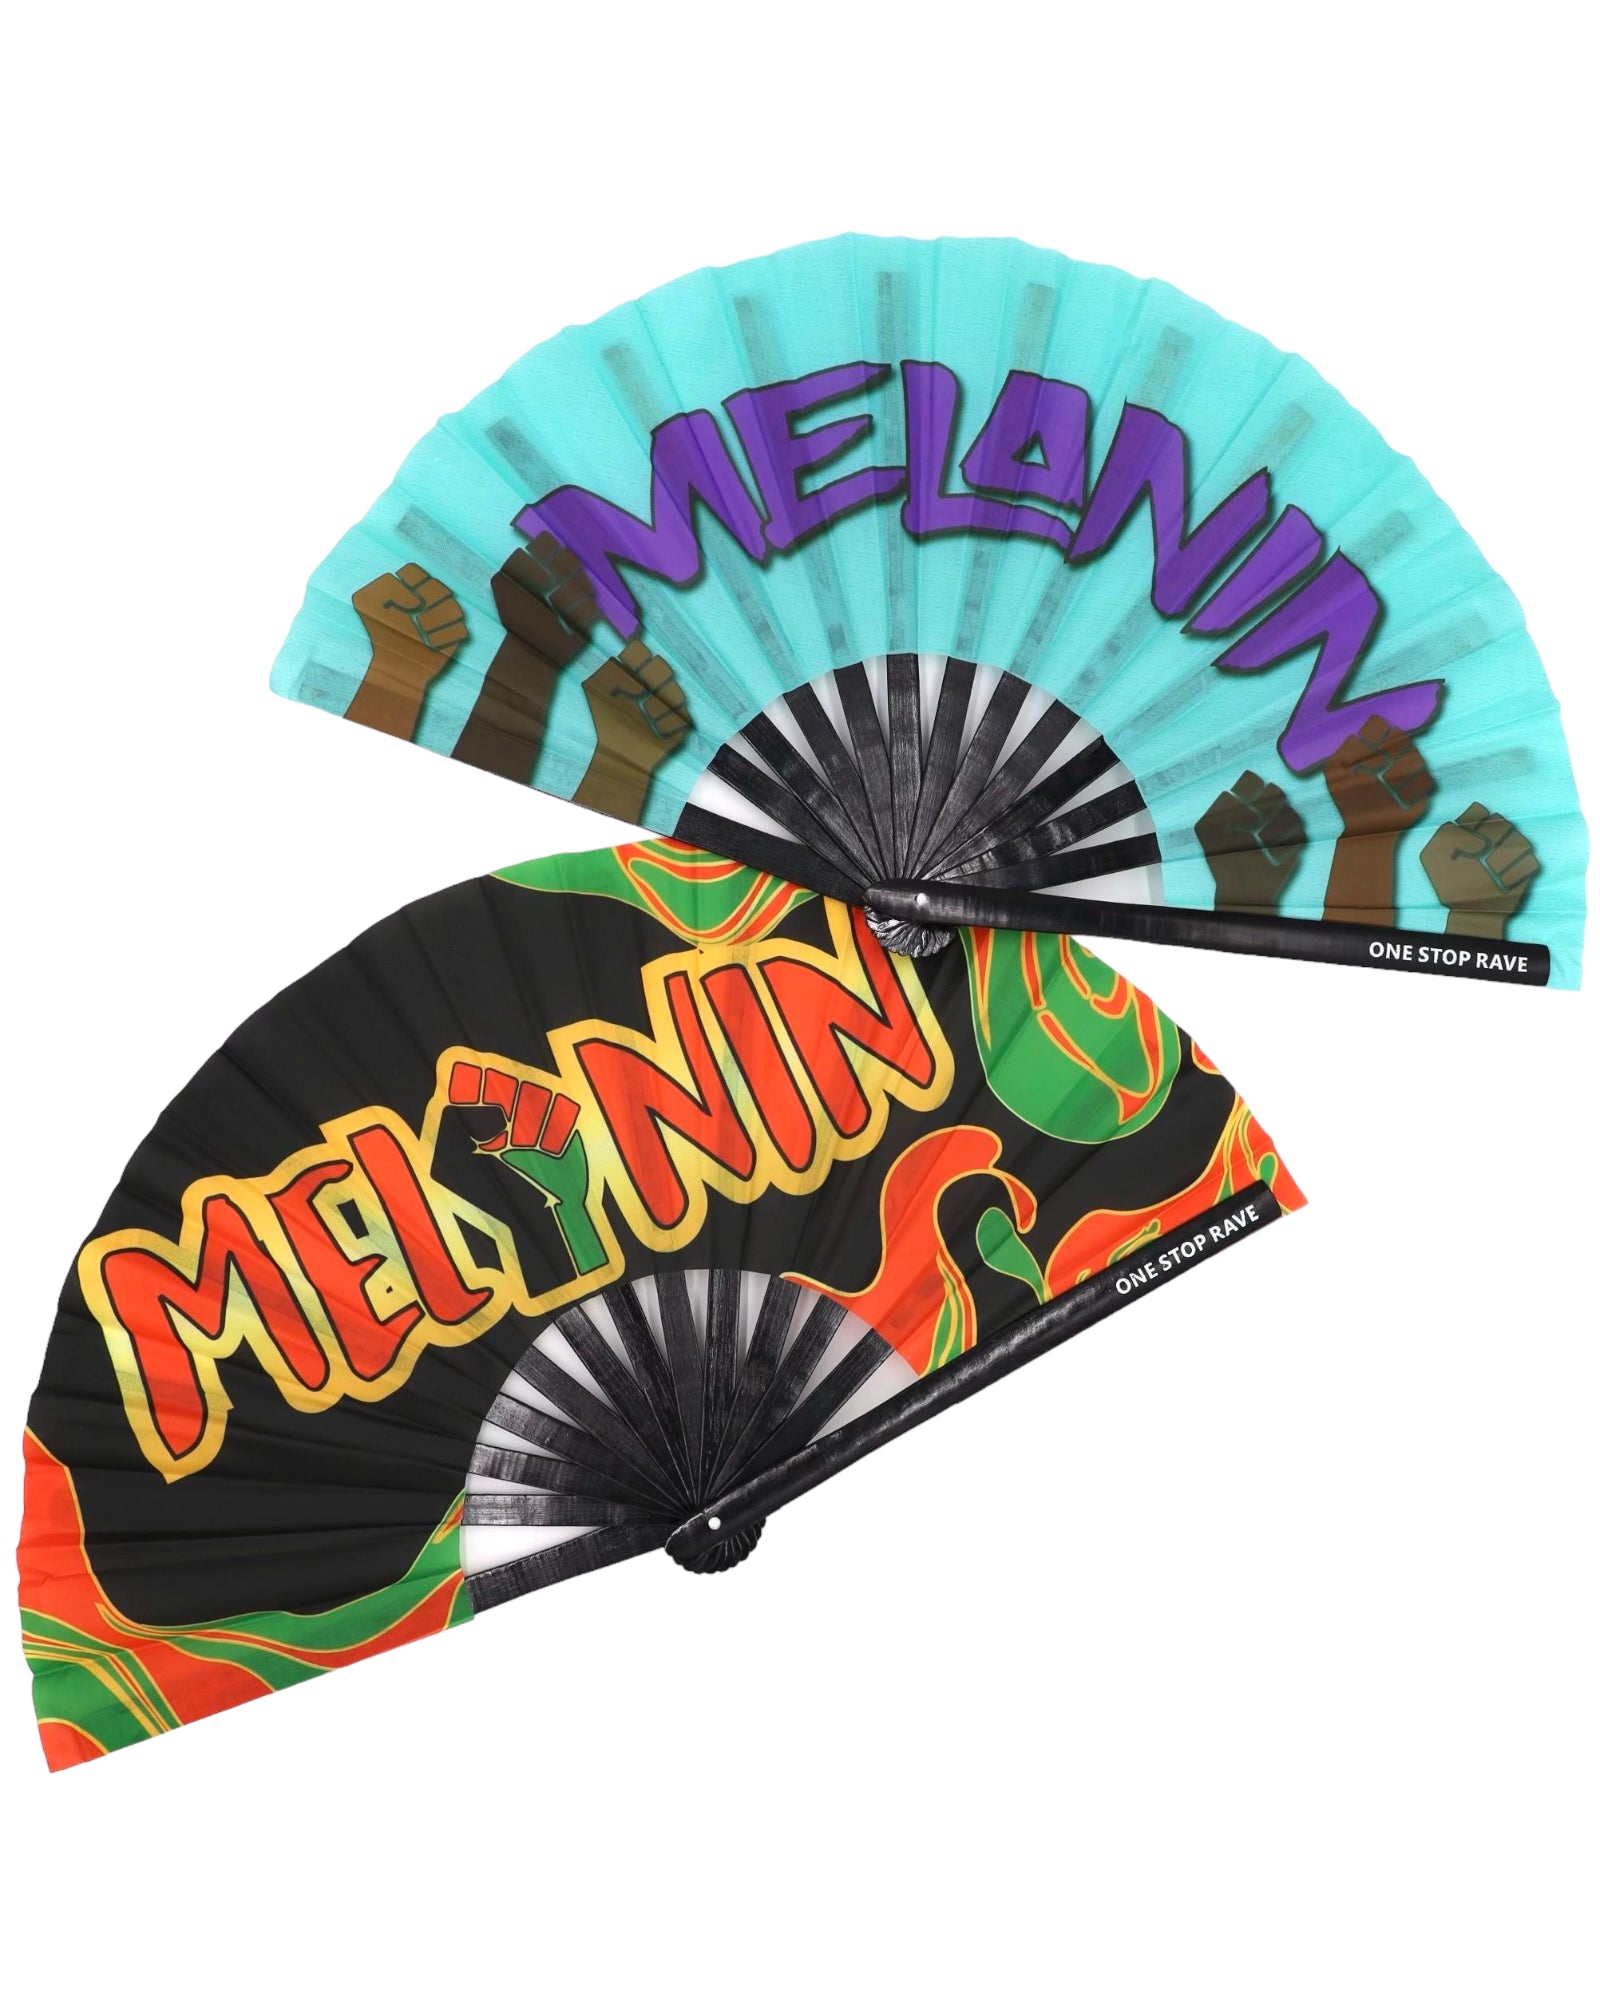 Melanin Ravers Hand Fan, Festival Fans 13.5", - One Stop Rave